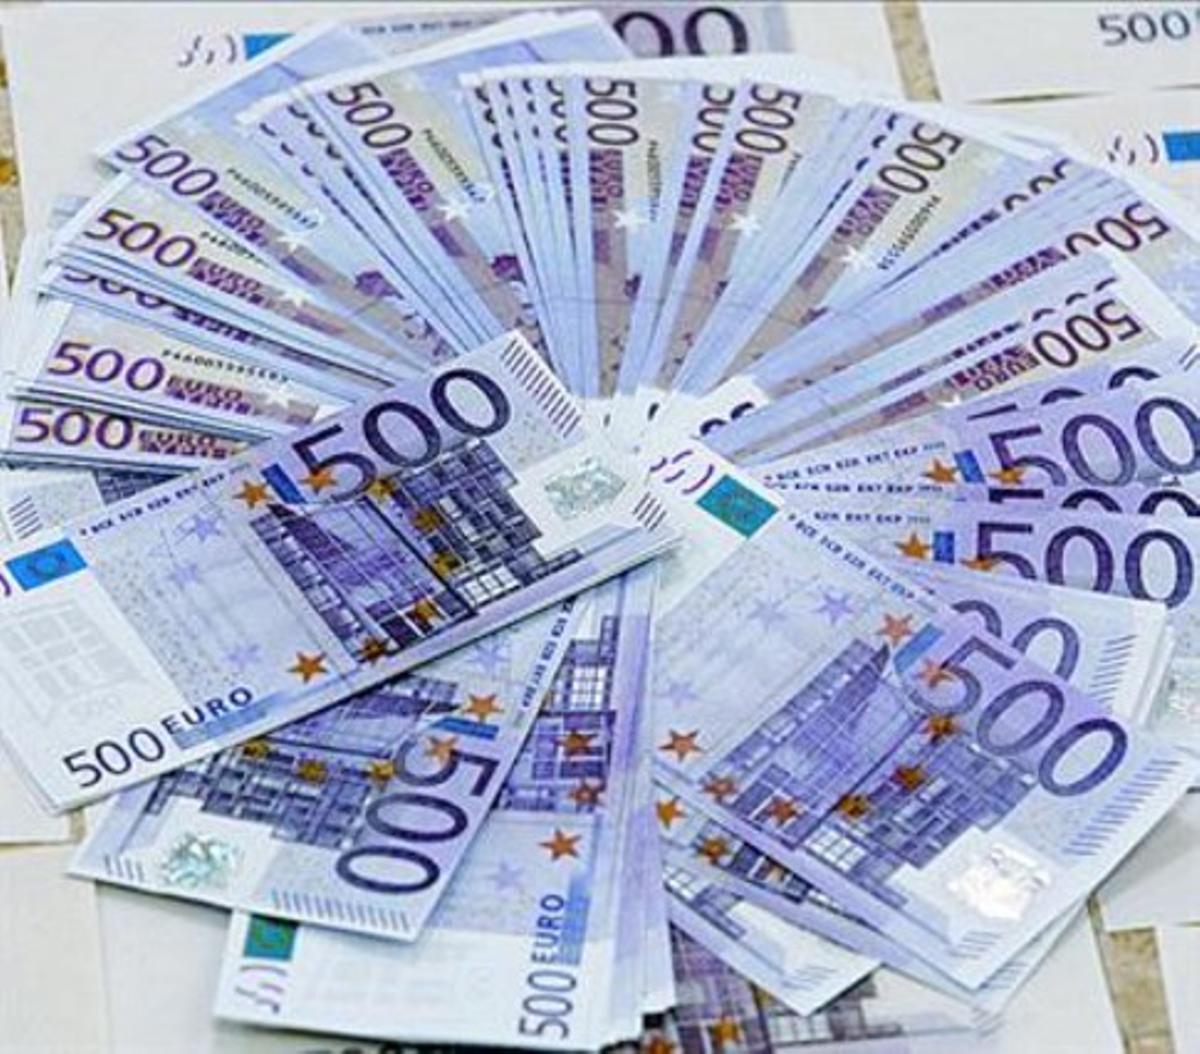 Bitllets de 500 euros, els més utilitzats per evadir impostos.